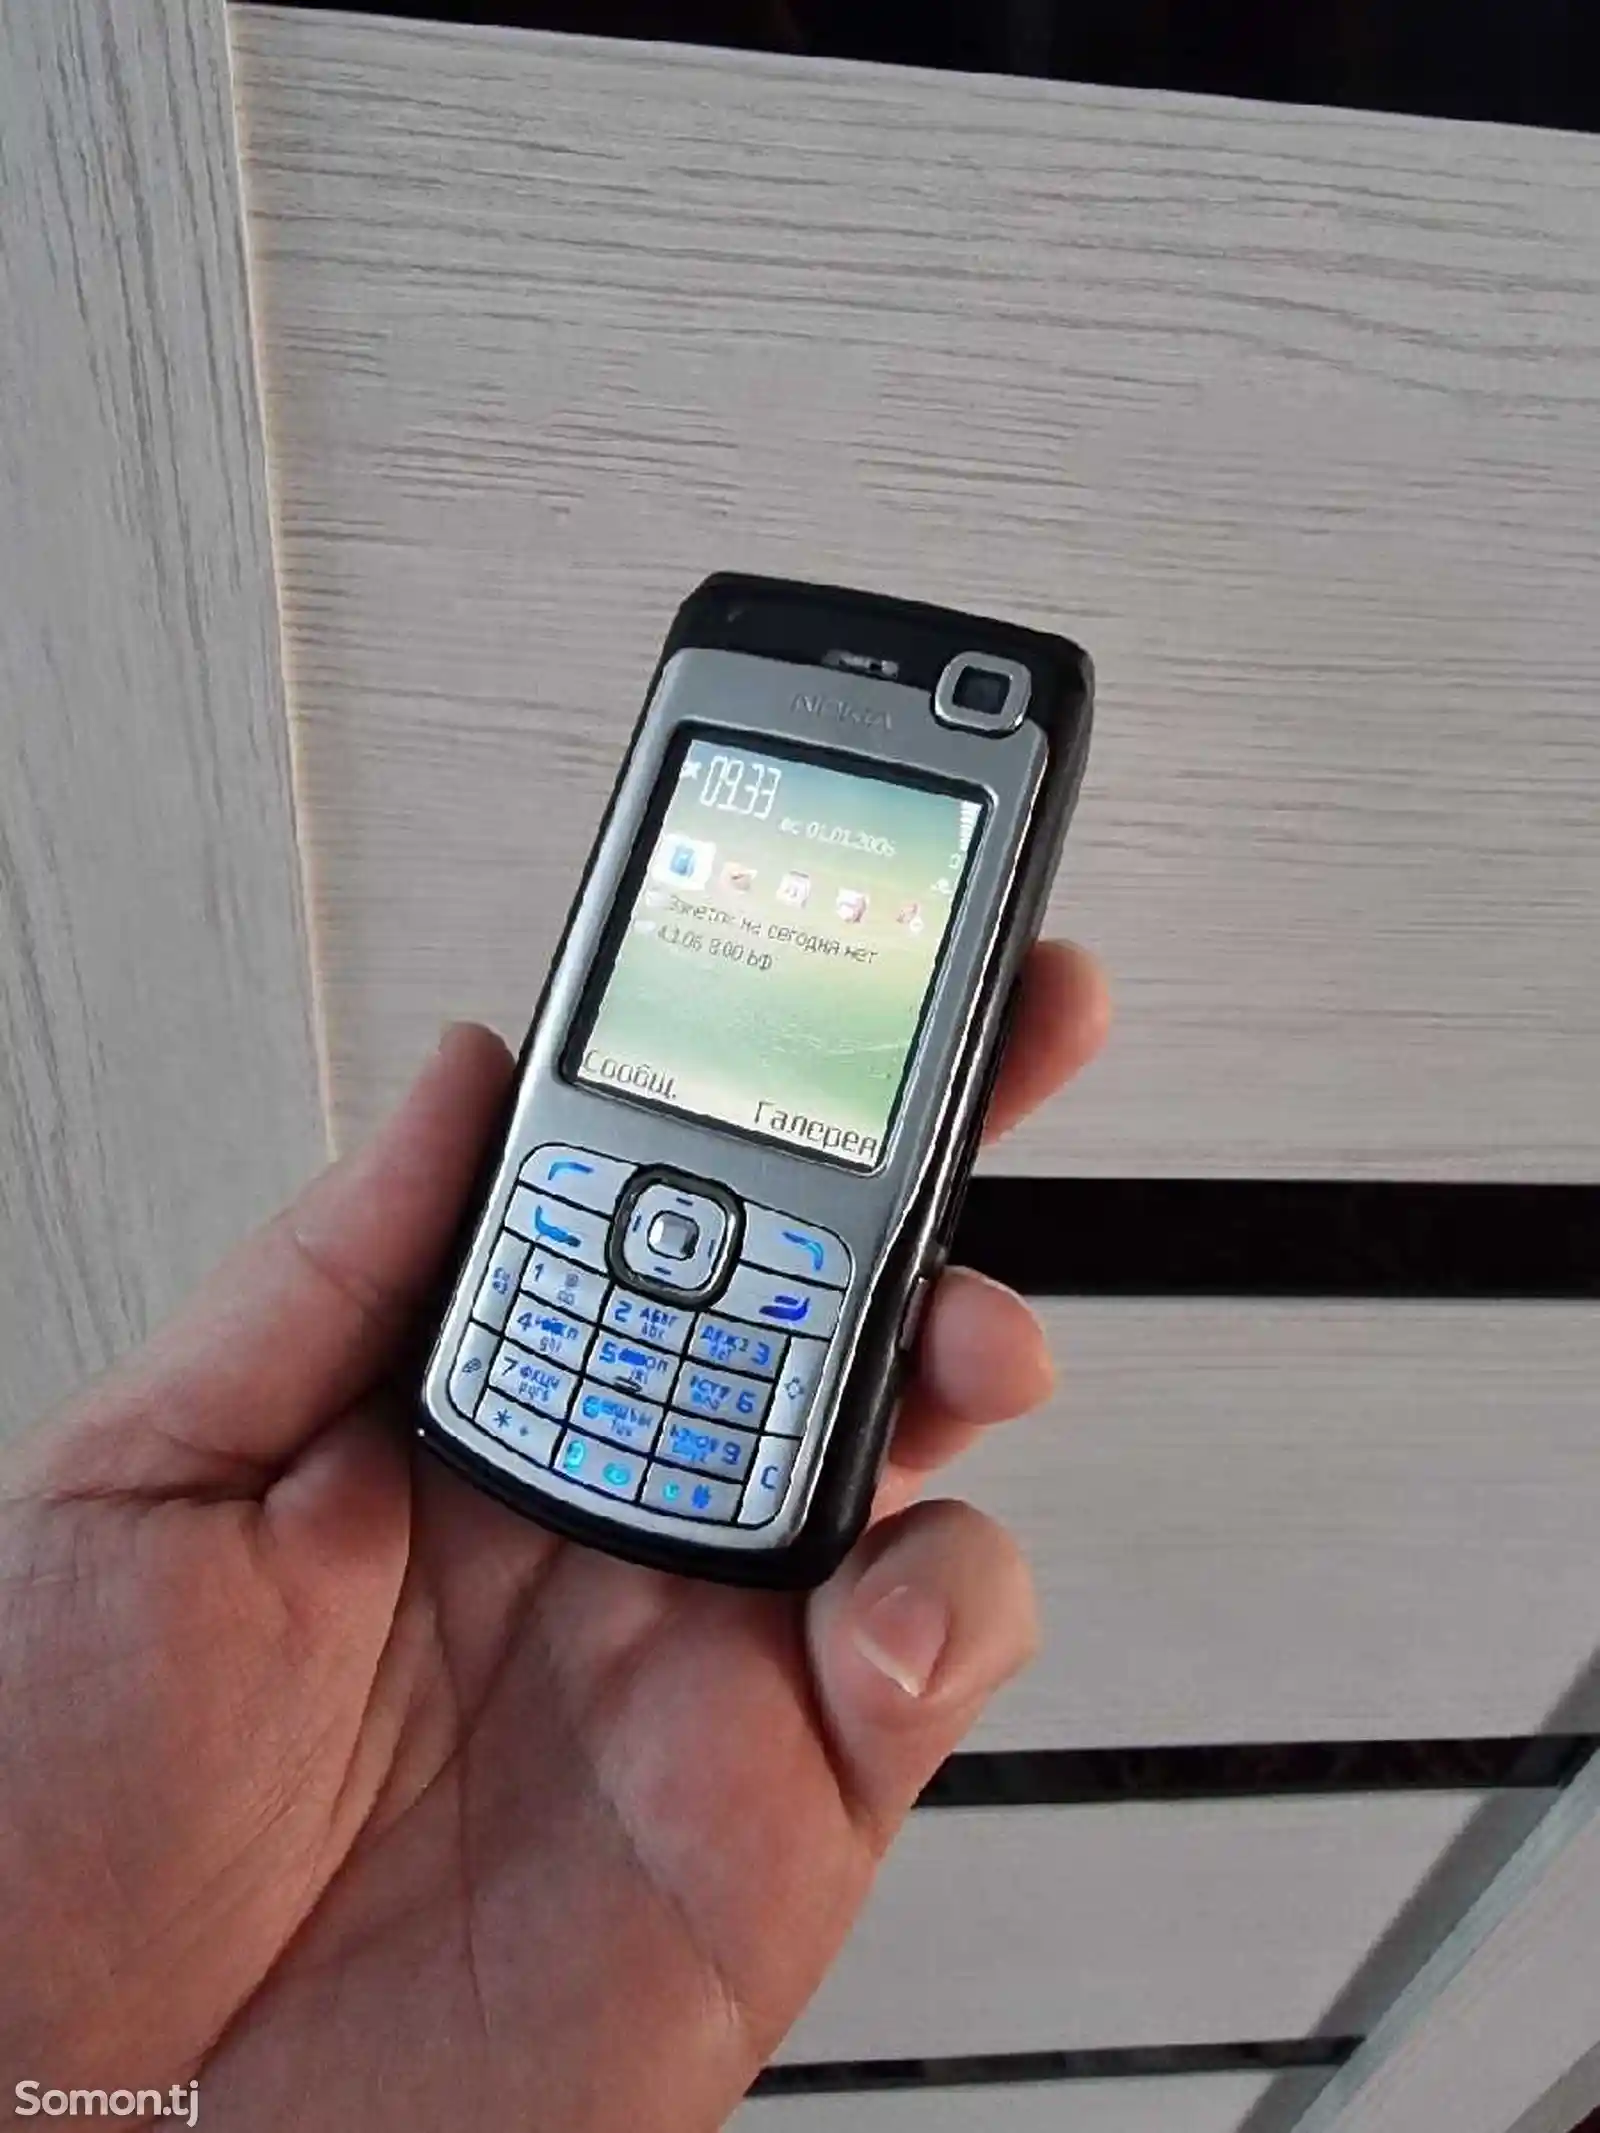 Nokia N70-1